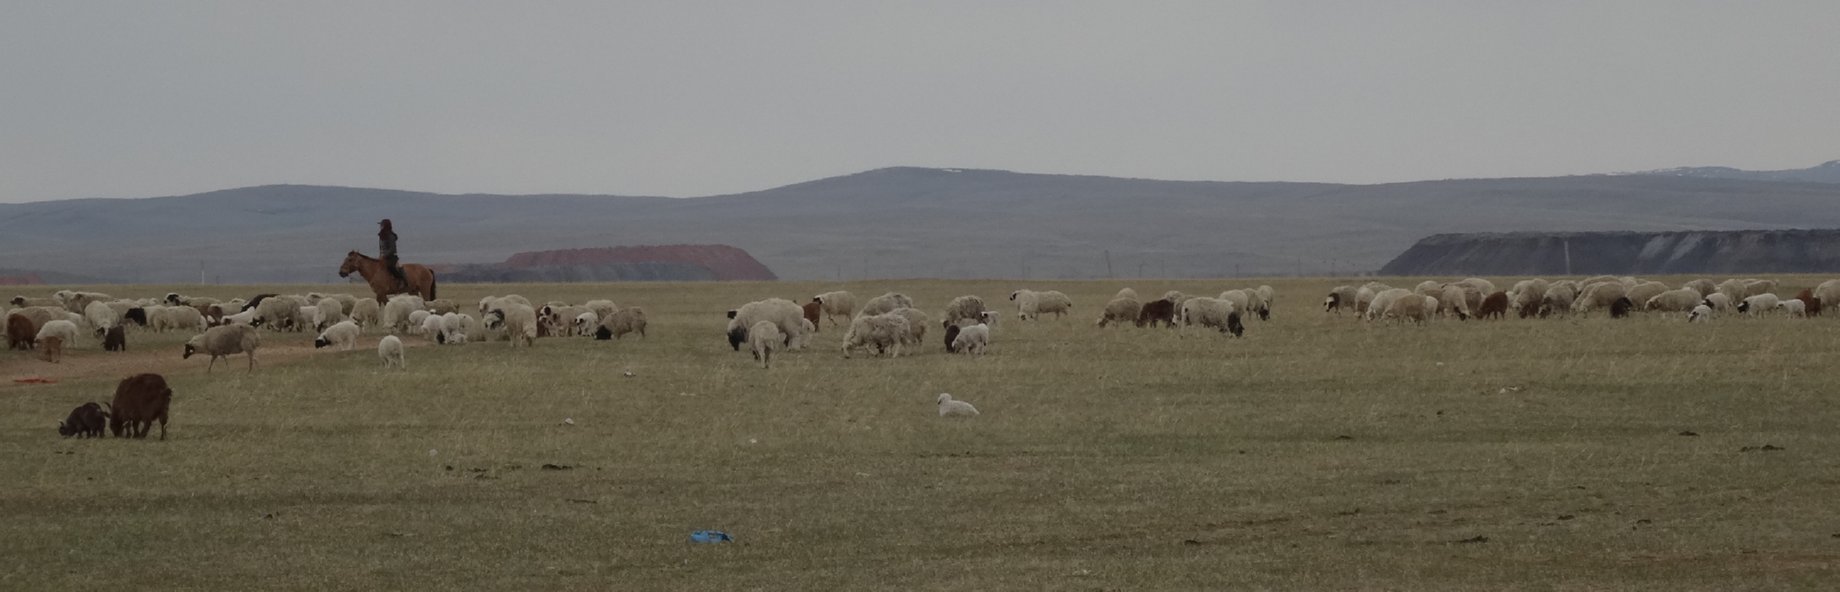 Zamyn Uud naar Ulaanbaatar - schaapskudde met herder te paard